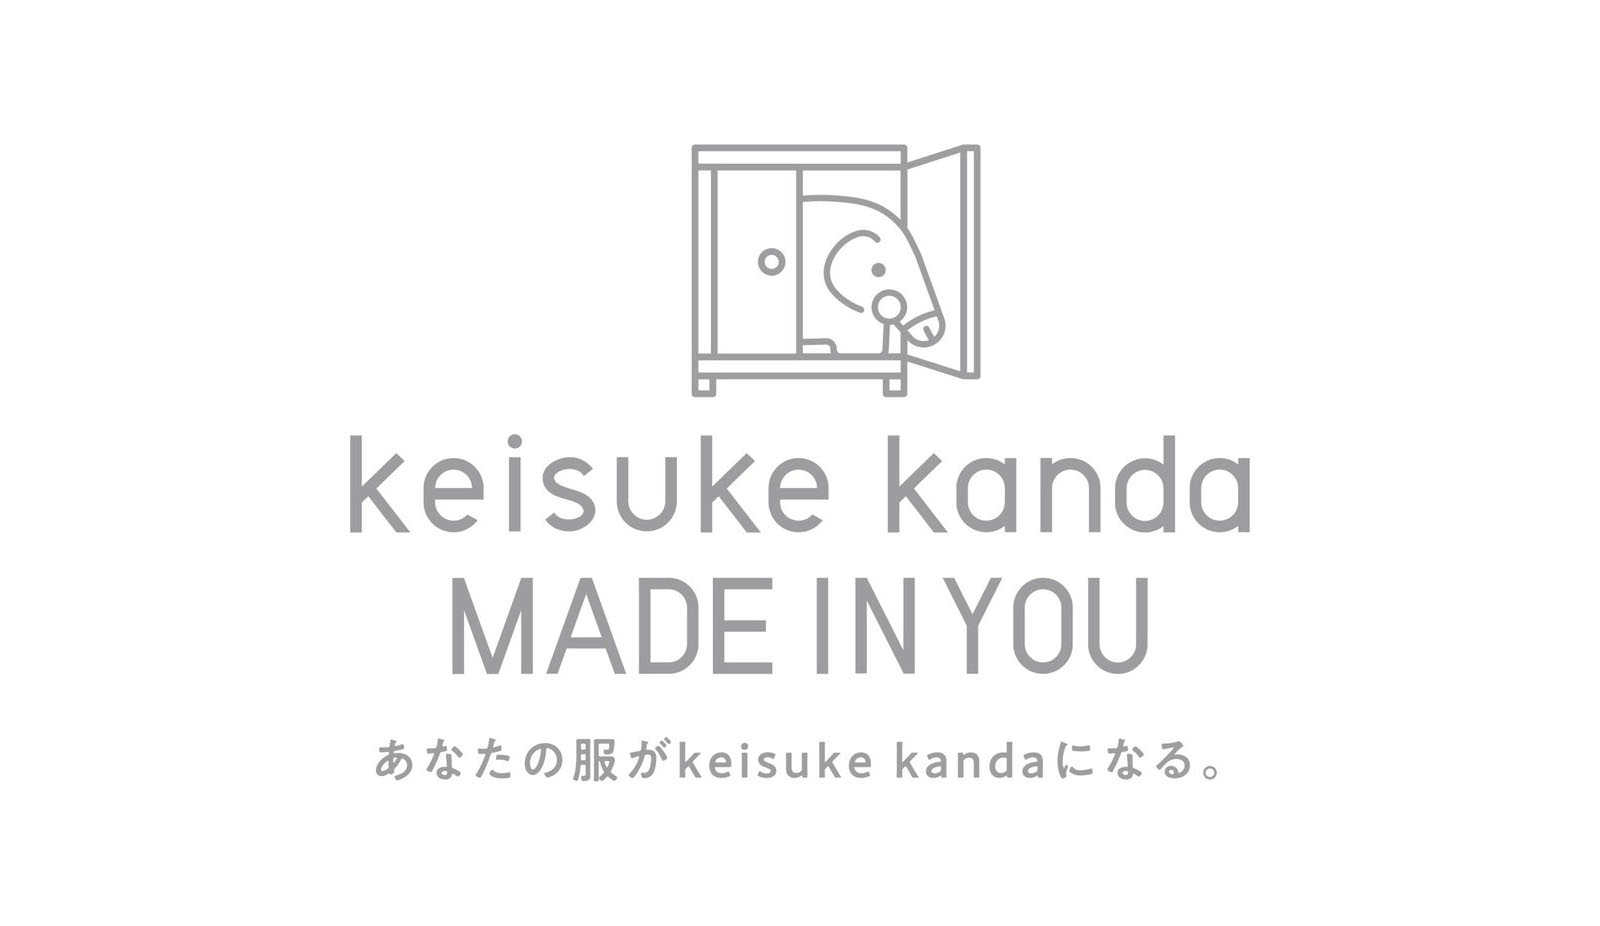 keisuke kanda (ケイスケカンダ) 公式サイト